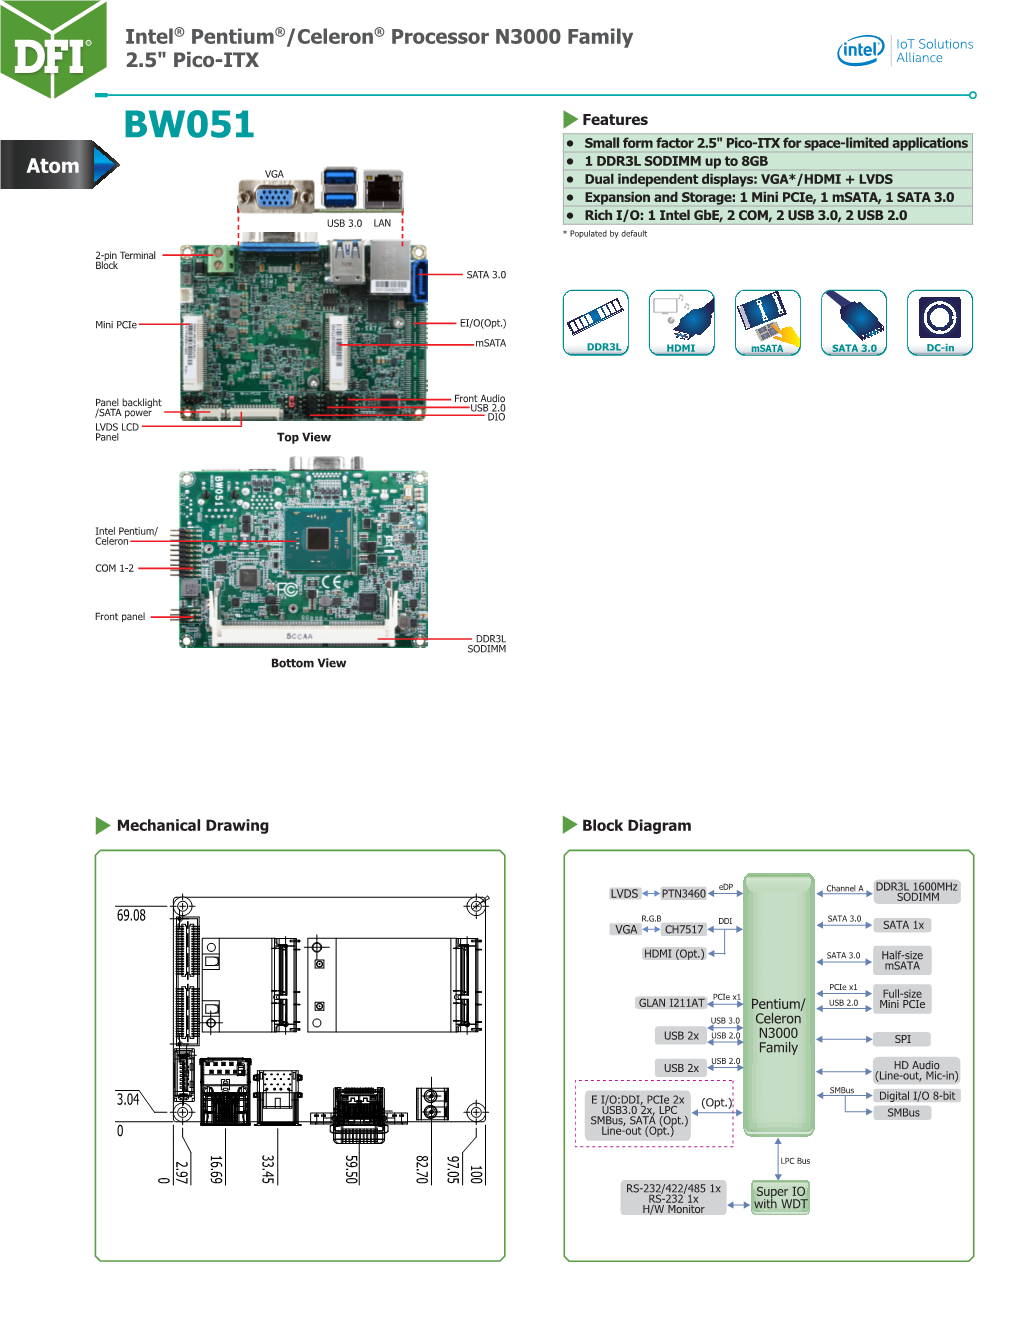 Intel® Pentium®/Celeron® Processor N3000 Family 2.5" Pico-ITX Atom